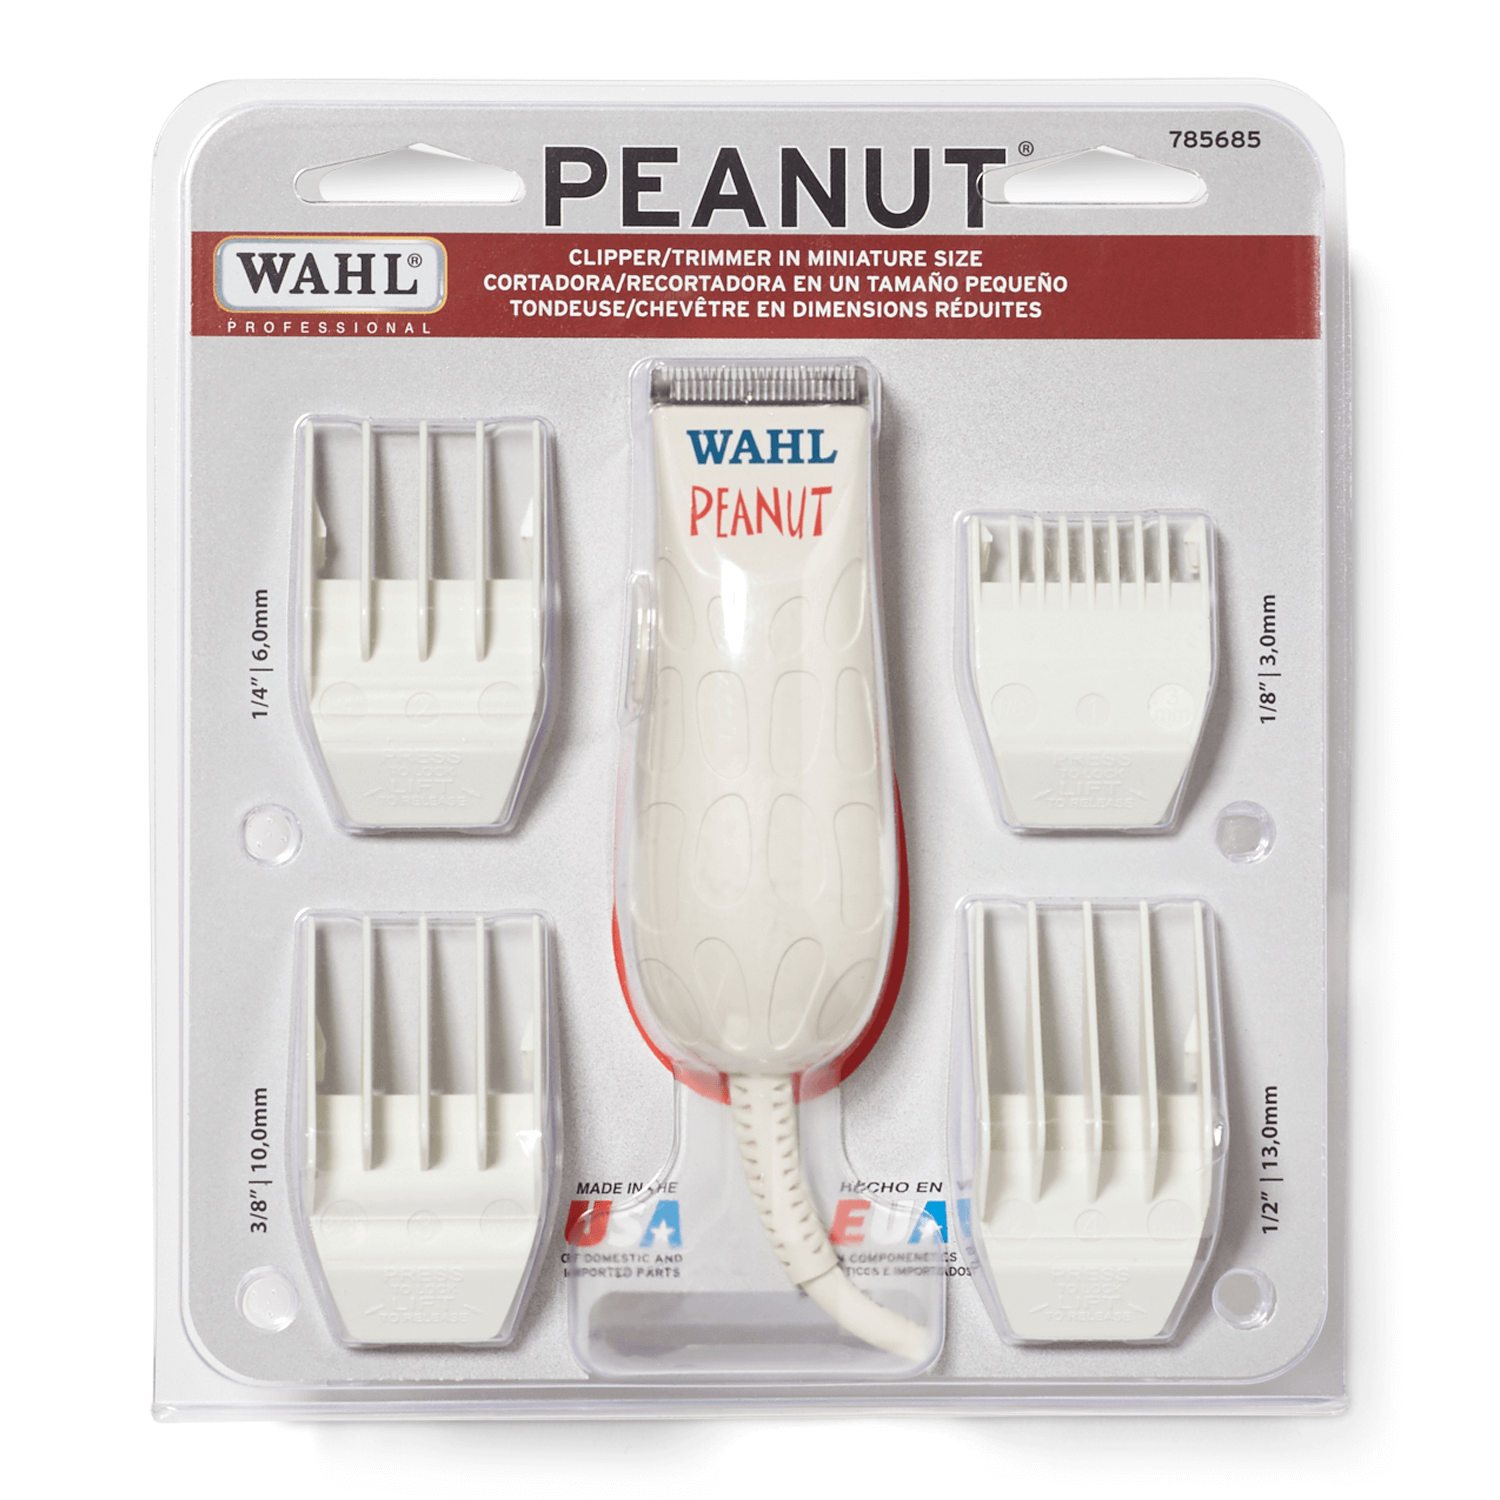 peanut machine hair